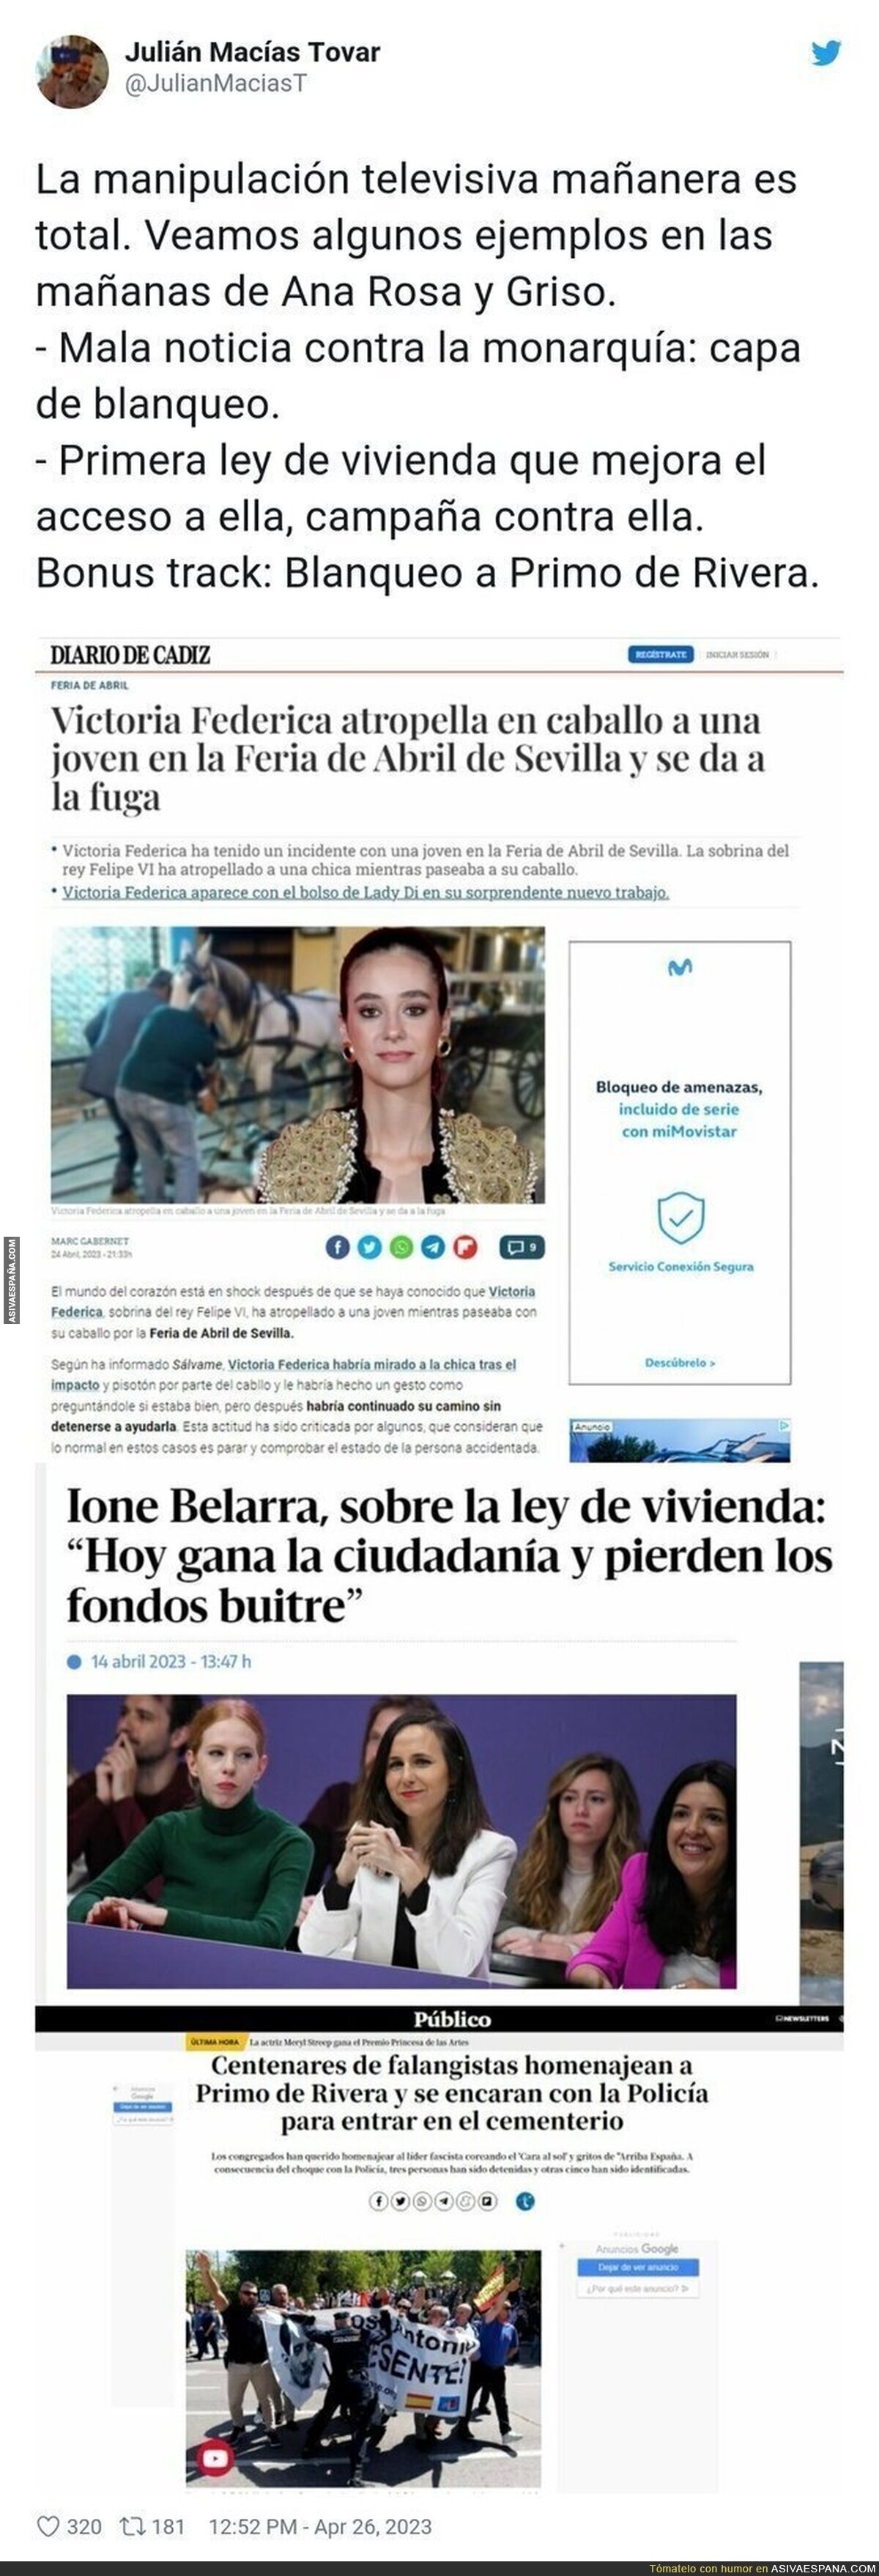 Así está la prensa a diario en España manipulando